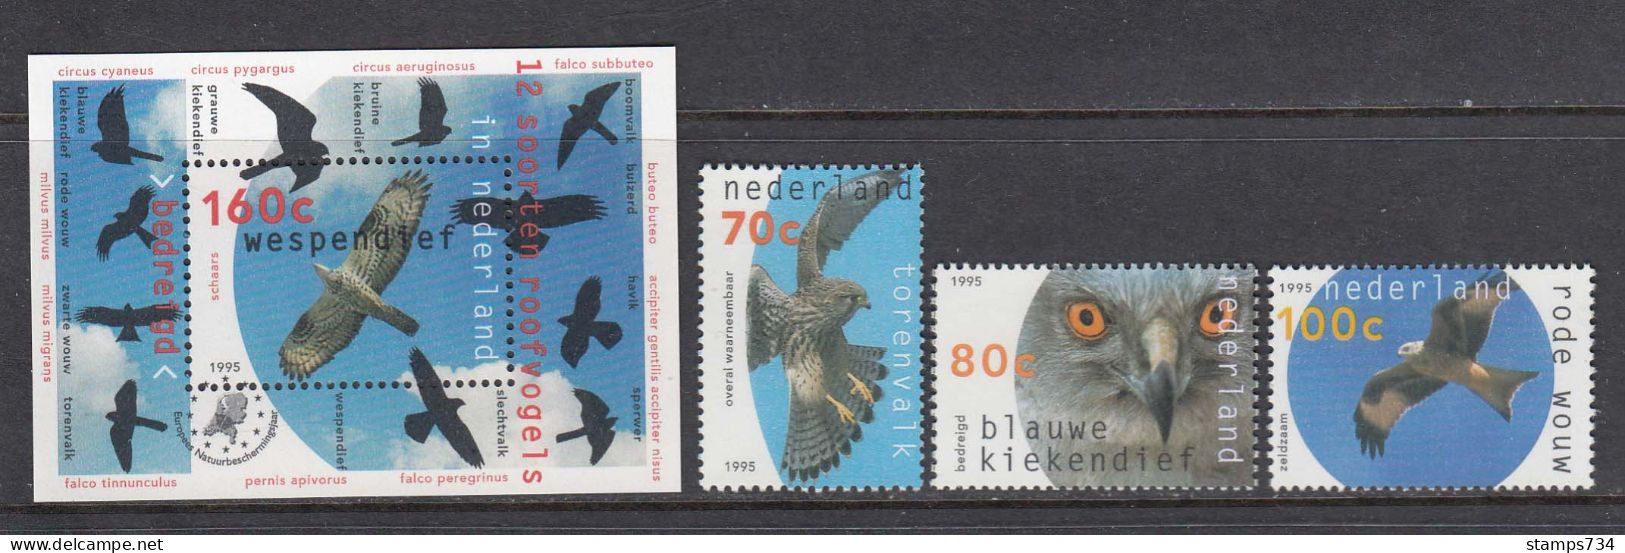 Niederlande 1995 - Preybirds, 3 W. + Block, MNH** - Eagles & Birds Of Prey